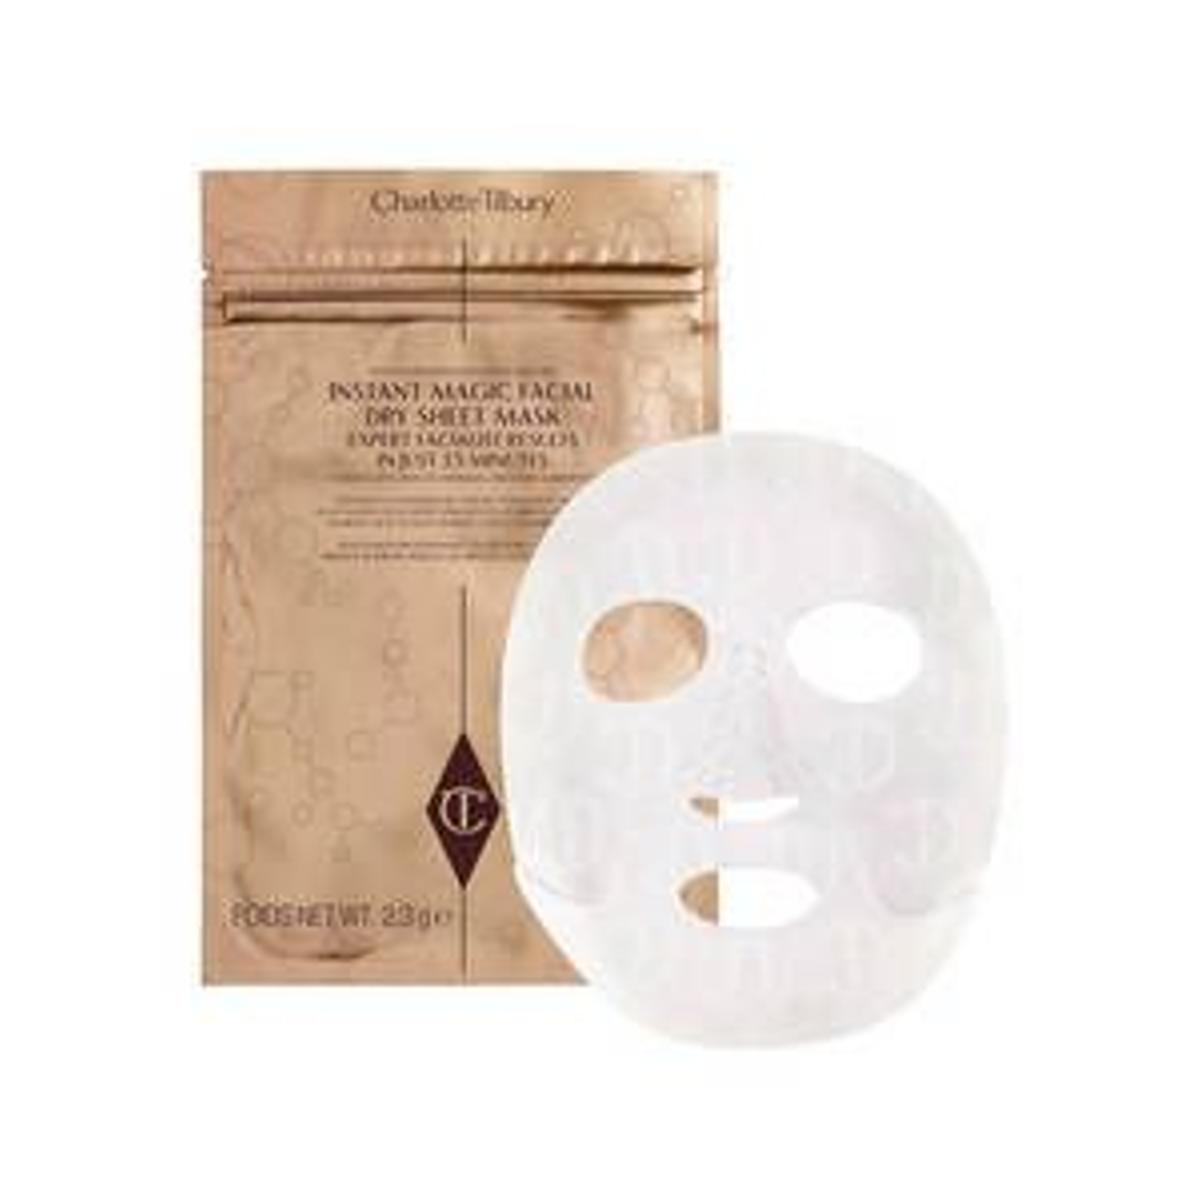 Instant Magic Facial Dry Sheet Mask de Charlotte Tilbury (Precio: 24,55 euros)